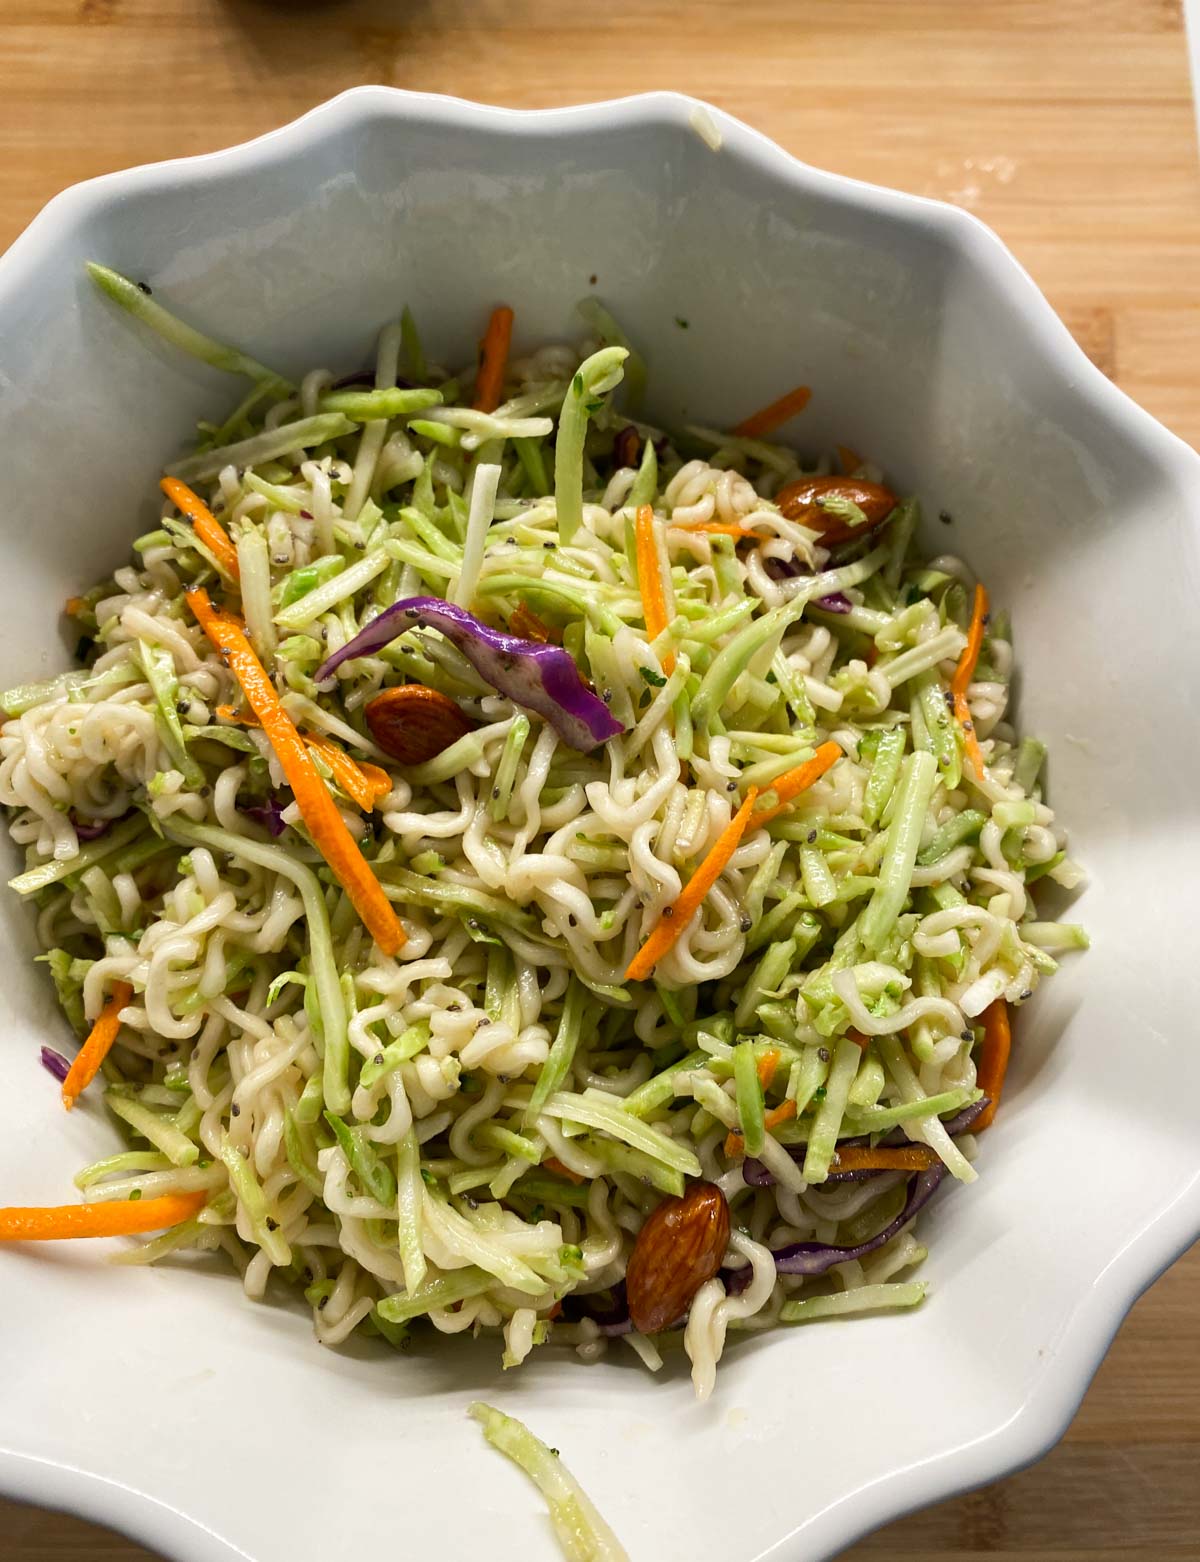 Summer Salad Recipes Broccoli and Ramen Noodle salad #recipe #saladrecipes 